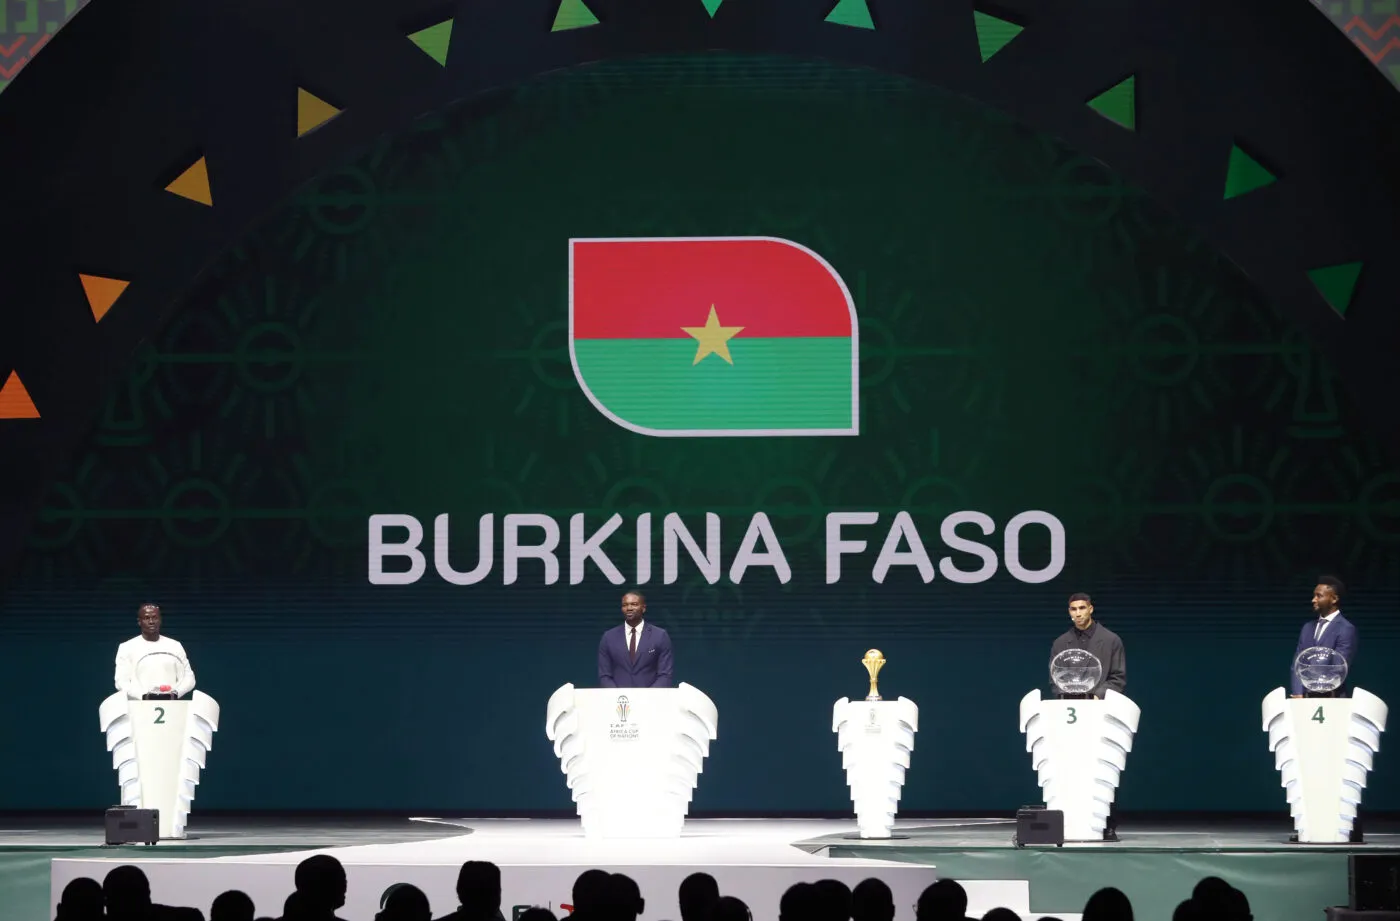 Le Burkina Faso tient son nouveau sélectionneur